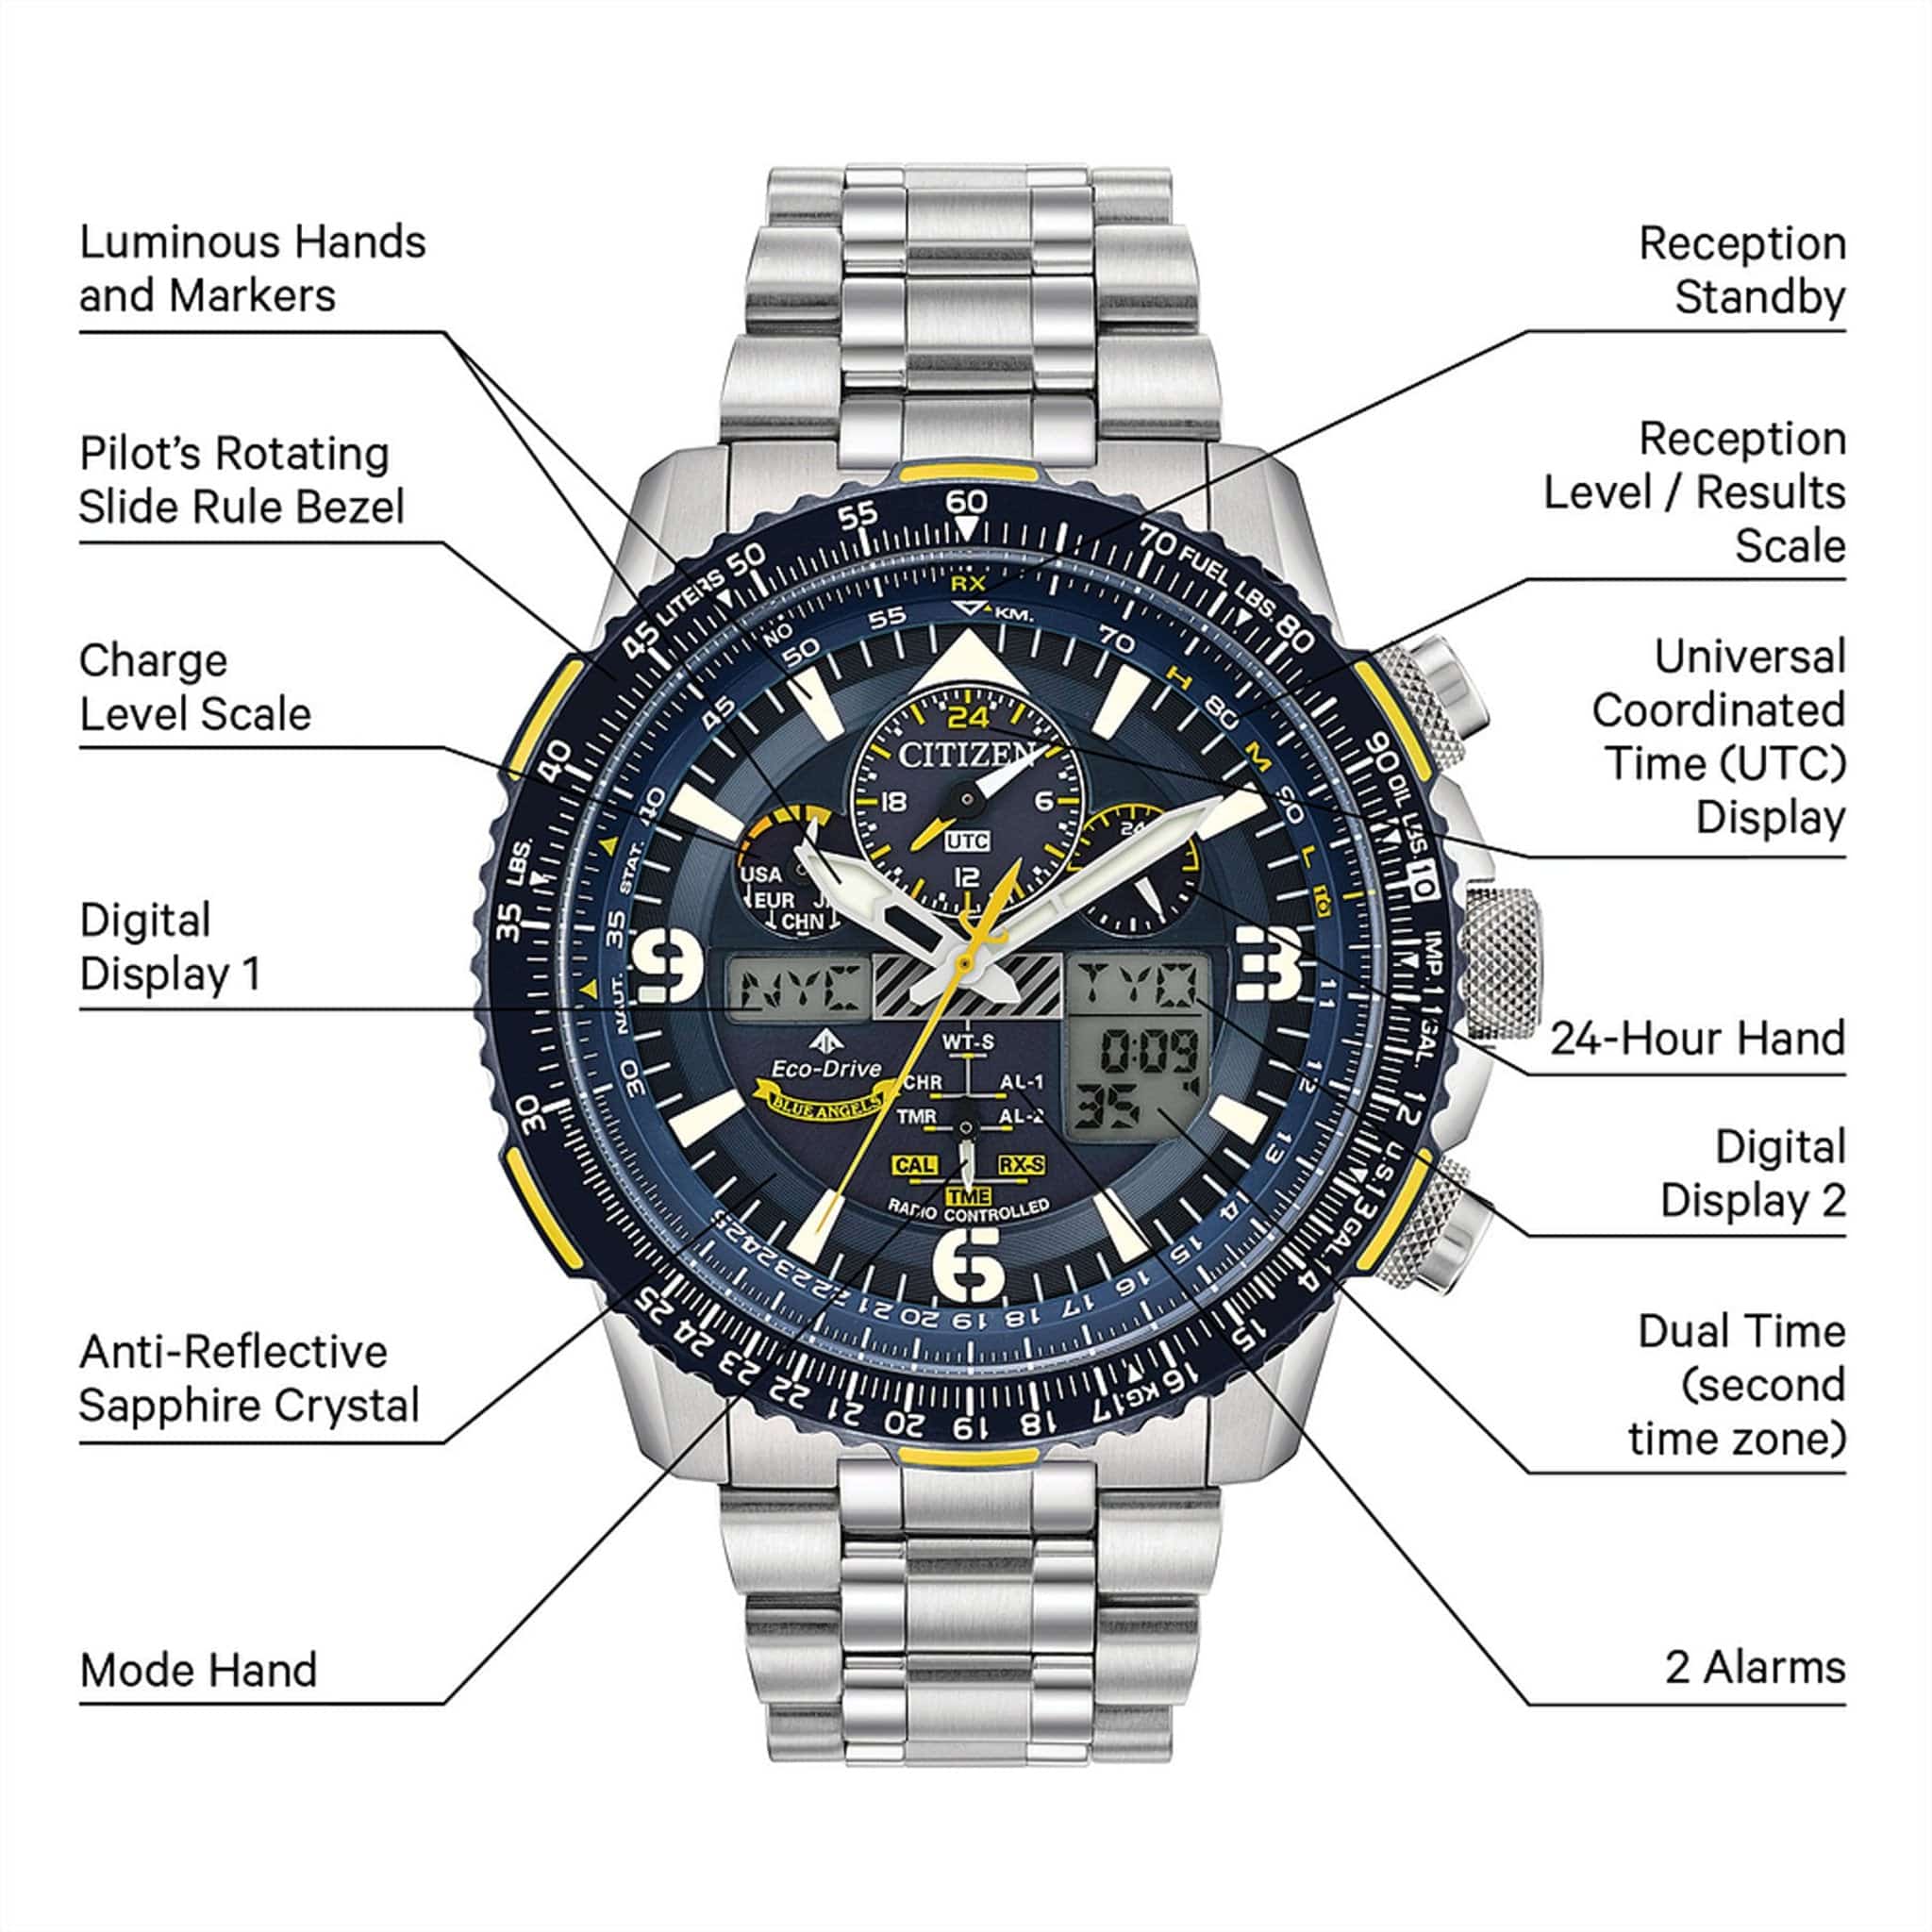 Citizen Promaster Skyhawk A-T Blue Dial Stainless Steel Bracelet Watch (External E6B) JY8078-52L - PilotMall.com